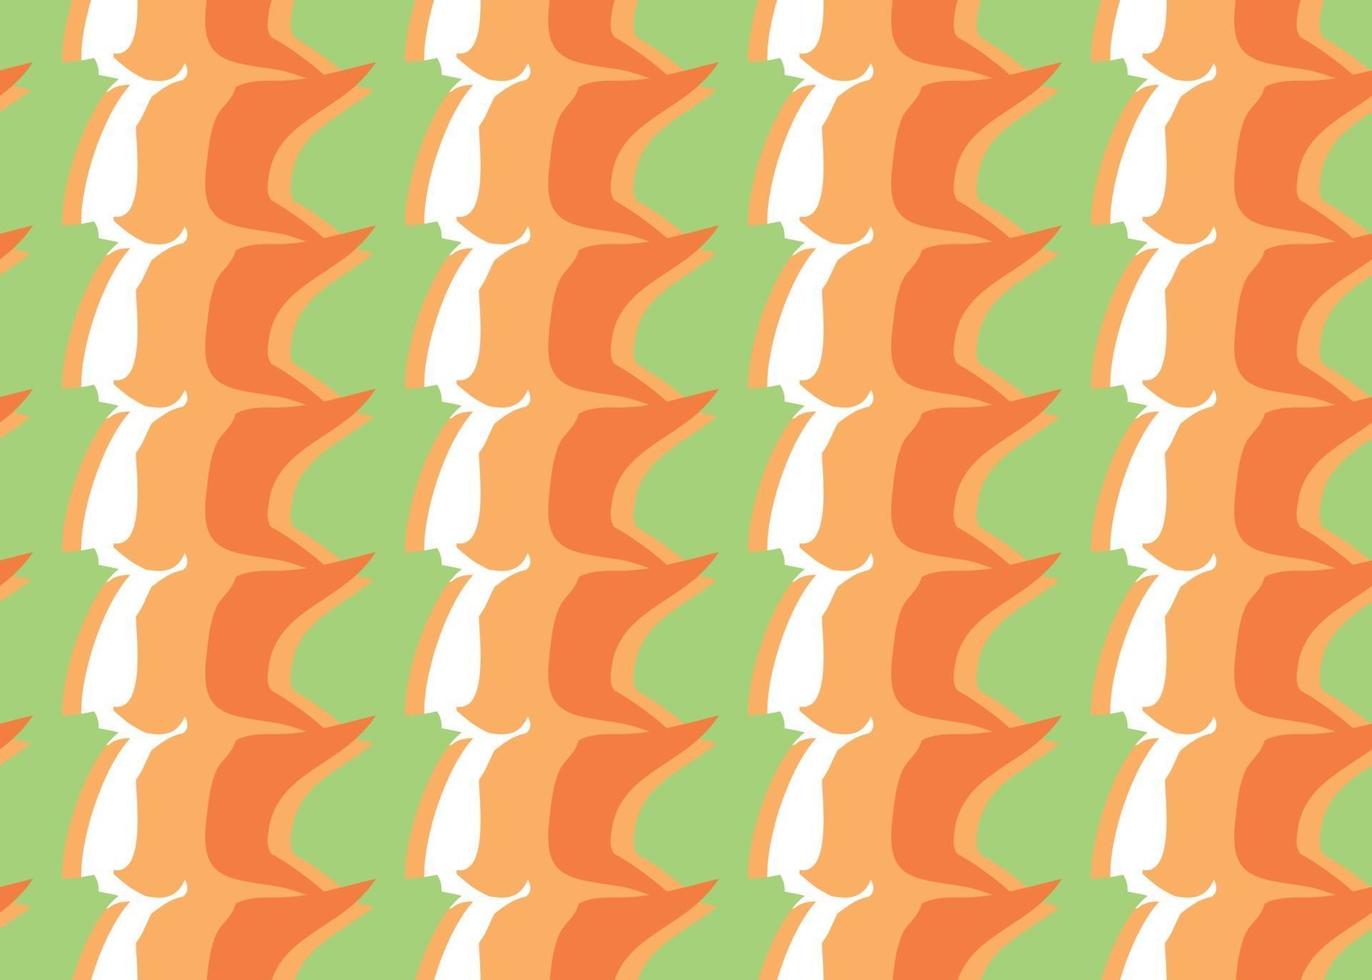 Vektor Textur Hintergrund, nahtloses Muster. handgezeichnete, orange, grün, weiße Farben.